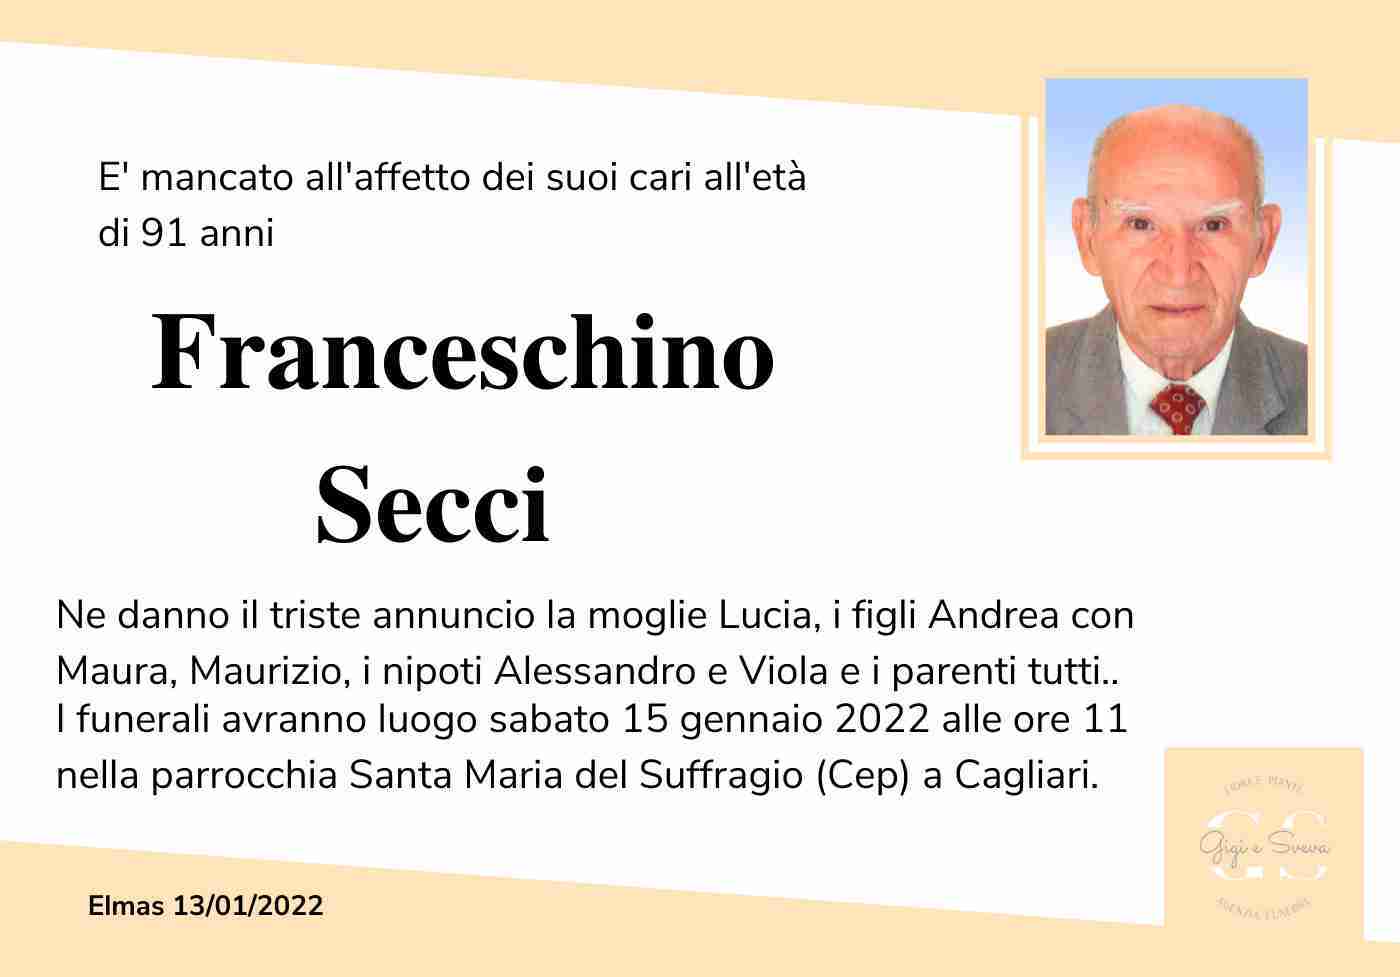 Franceschino Secci